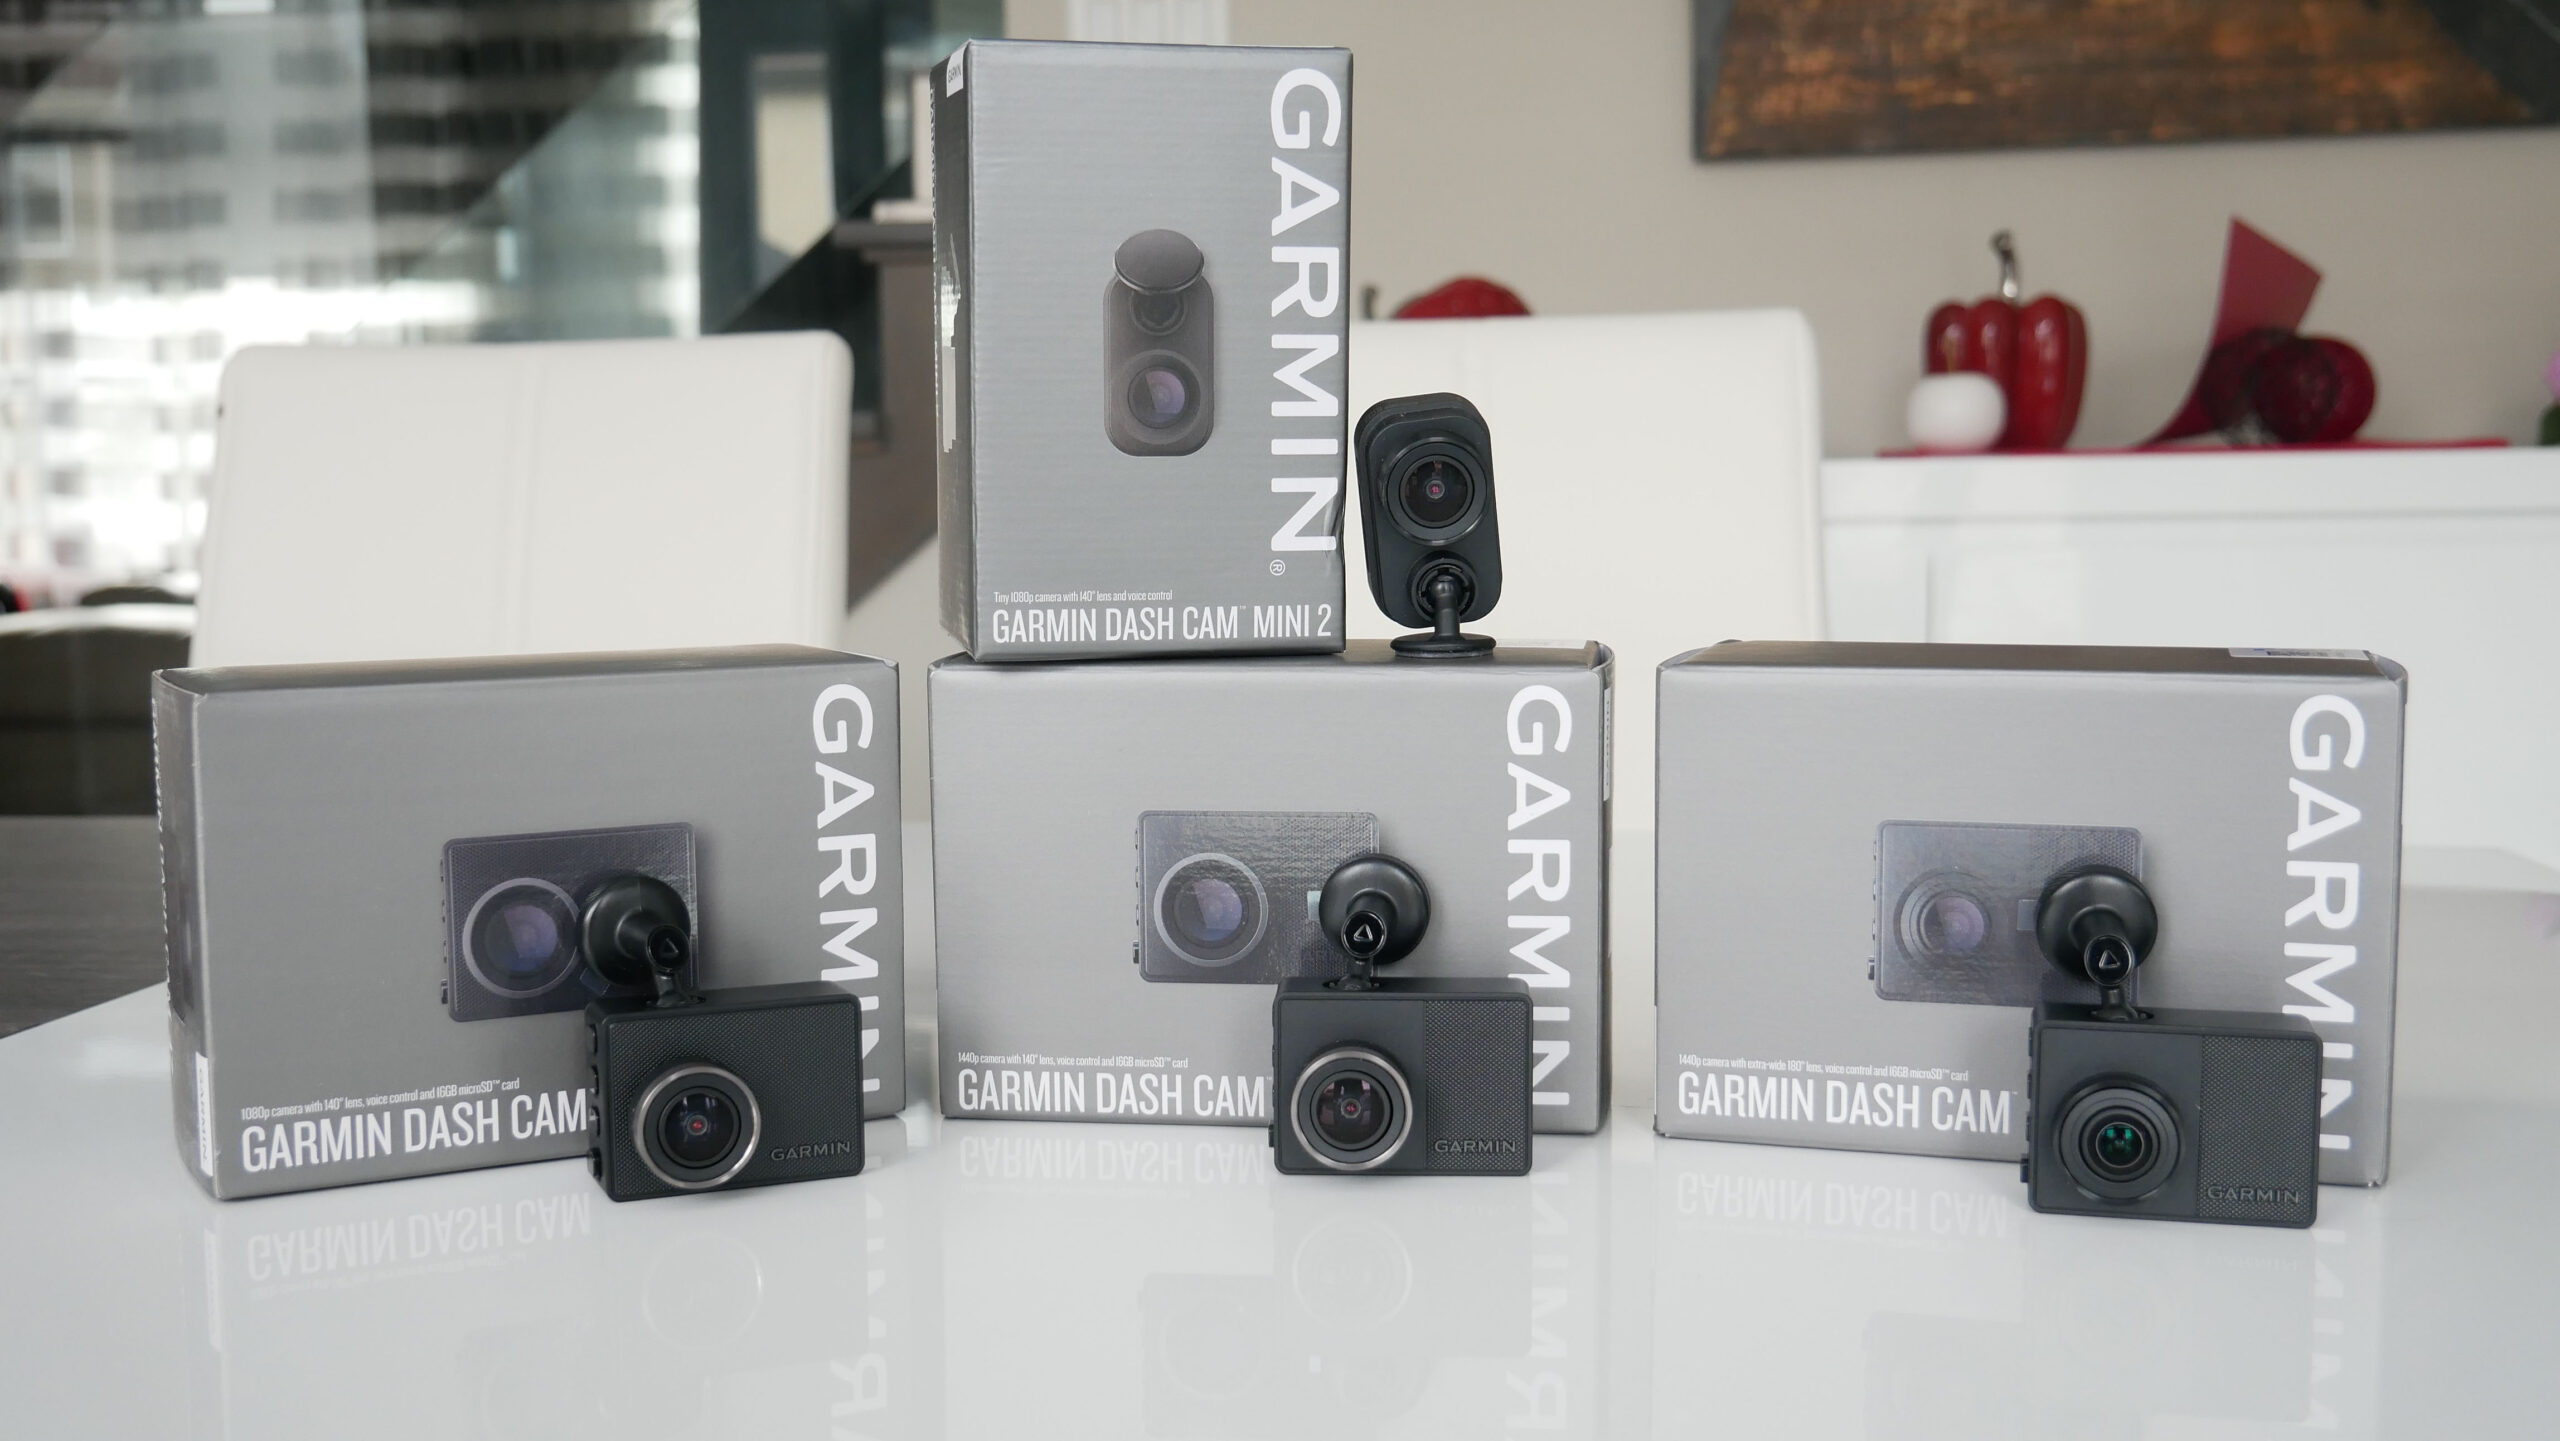 Garmin-Mini caméra de tableau de bord intelligente pour voiture